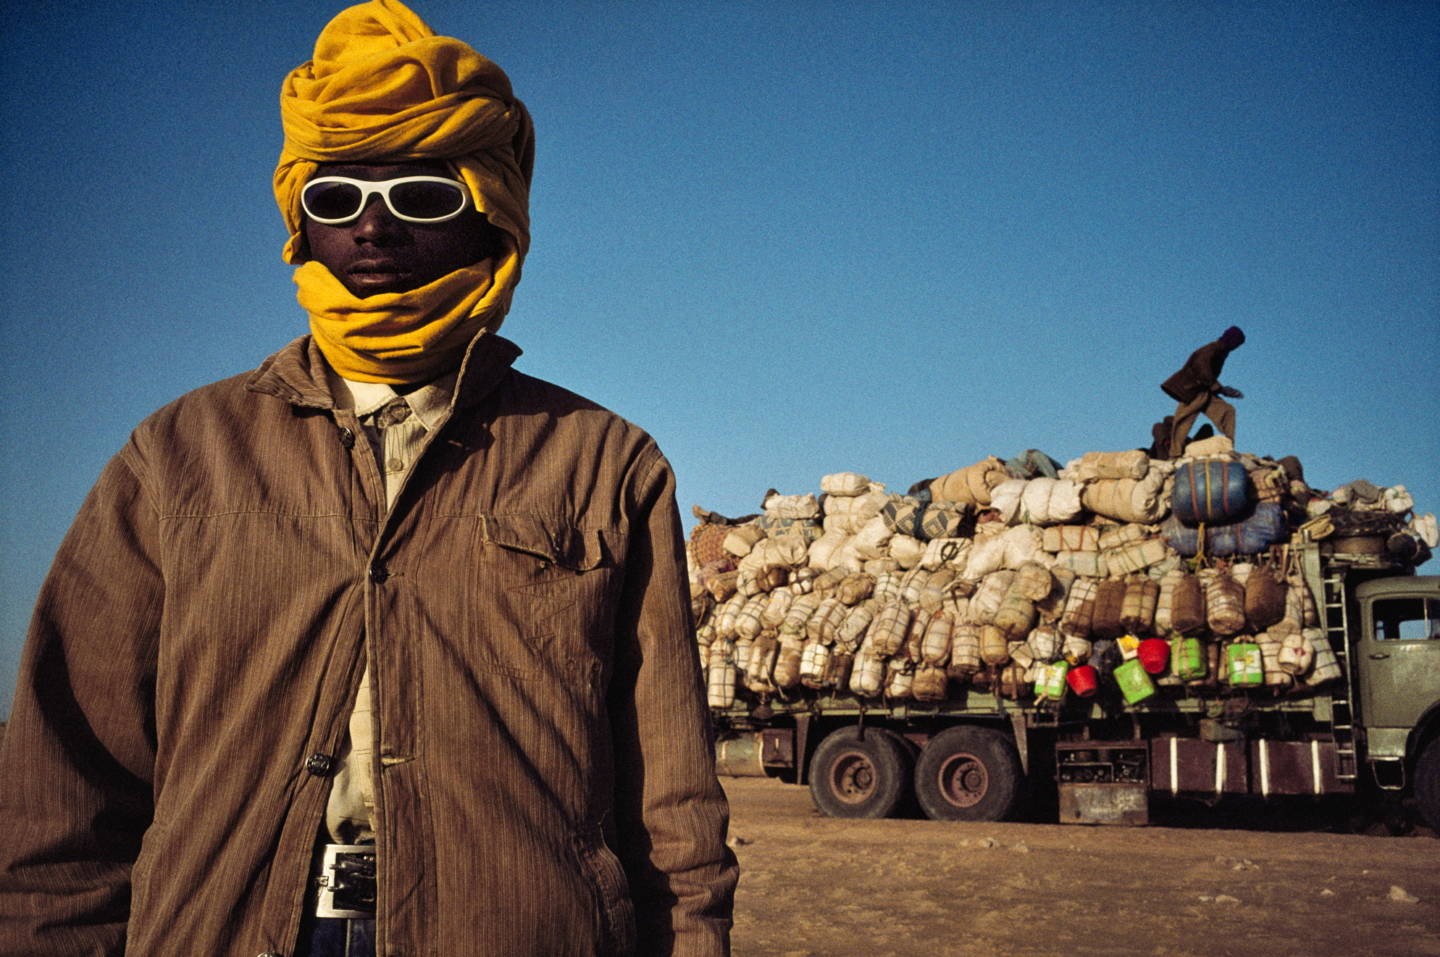 Тысячи нелегальных мигрантов из Нигерии, Ганы и Мали совершают опасный переход через пустыню Тенере в поисках работы в Ливии и странах Европейского союза. Нигер, 2007. Фотограф Паскаль Мэтр